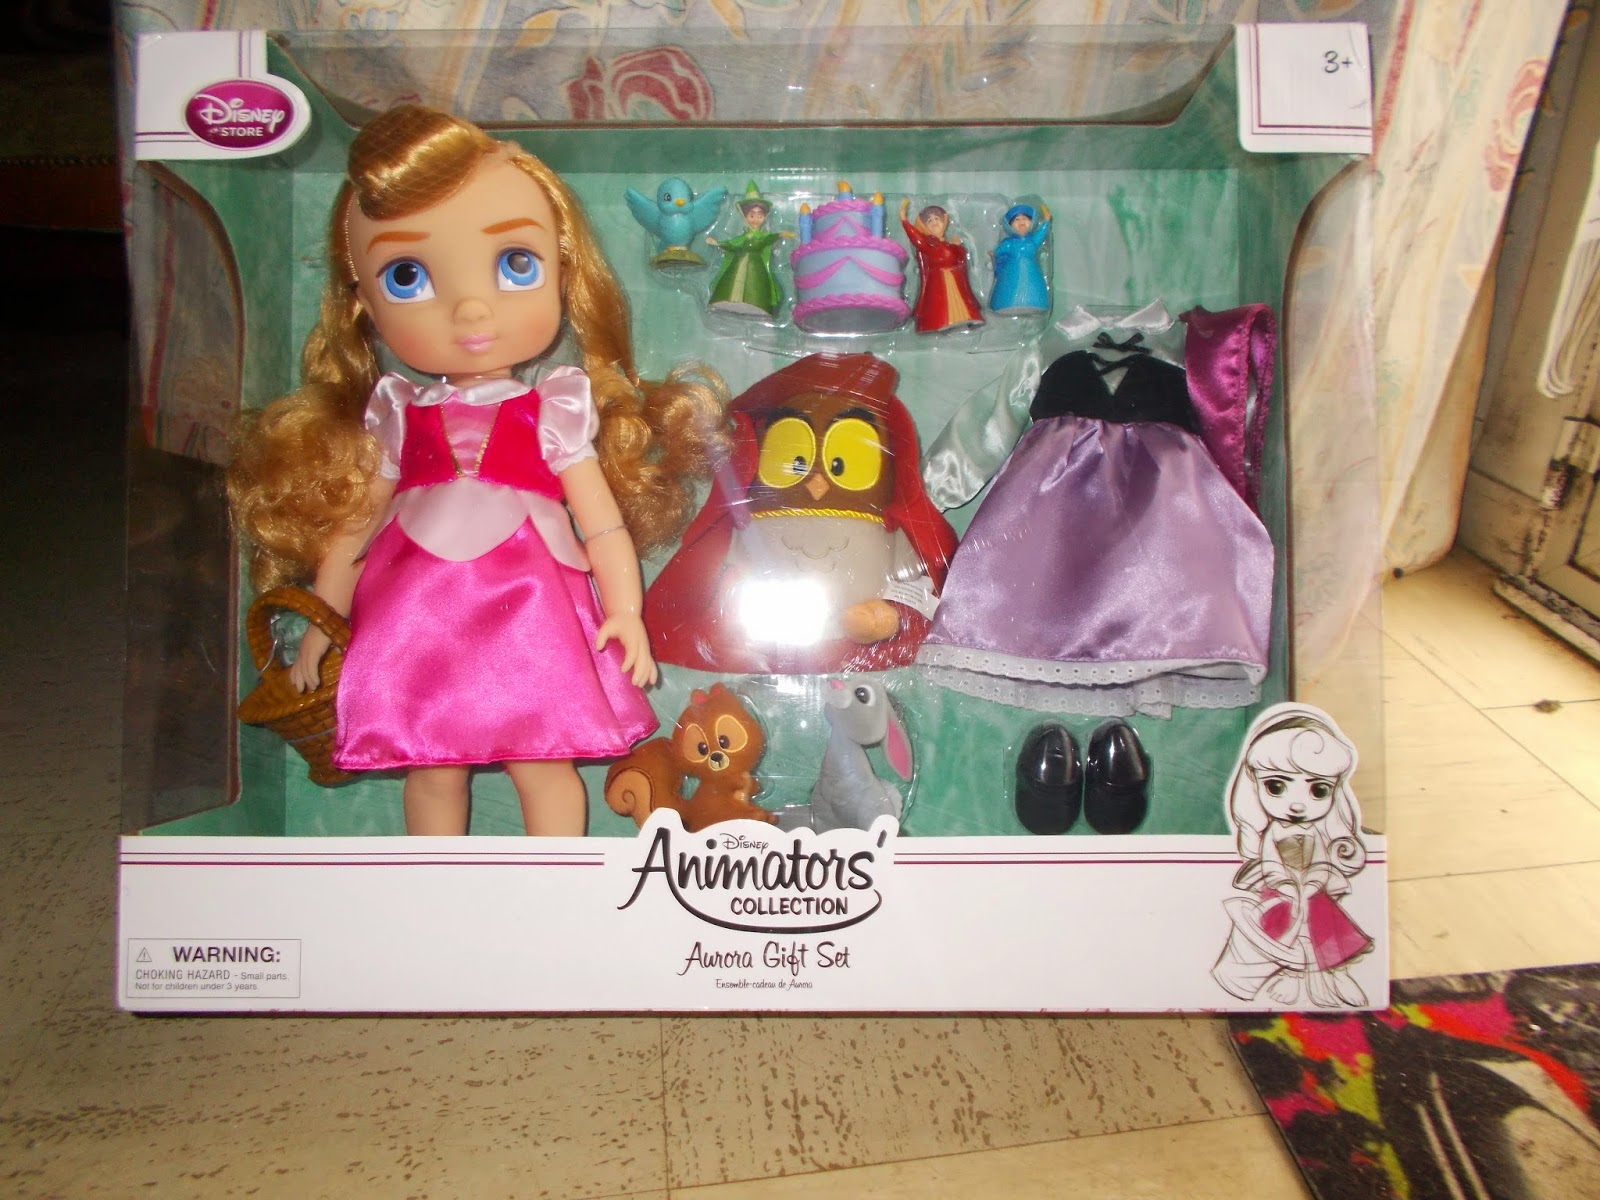 Le monde des poupées Disney: Coffret Animators Aurore gif set/ Sleeping  beauty animators gif set disney store 2014